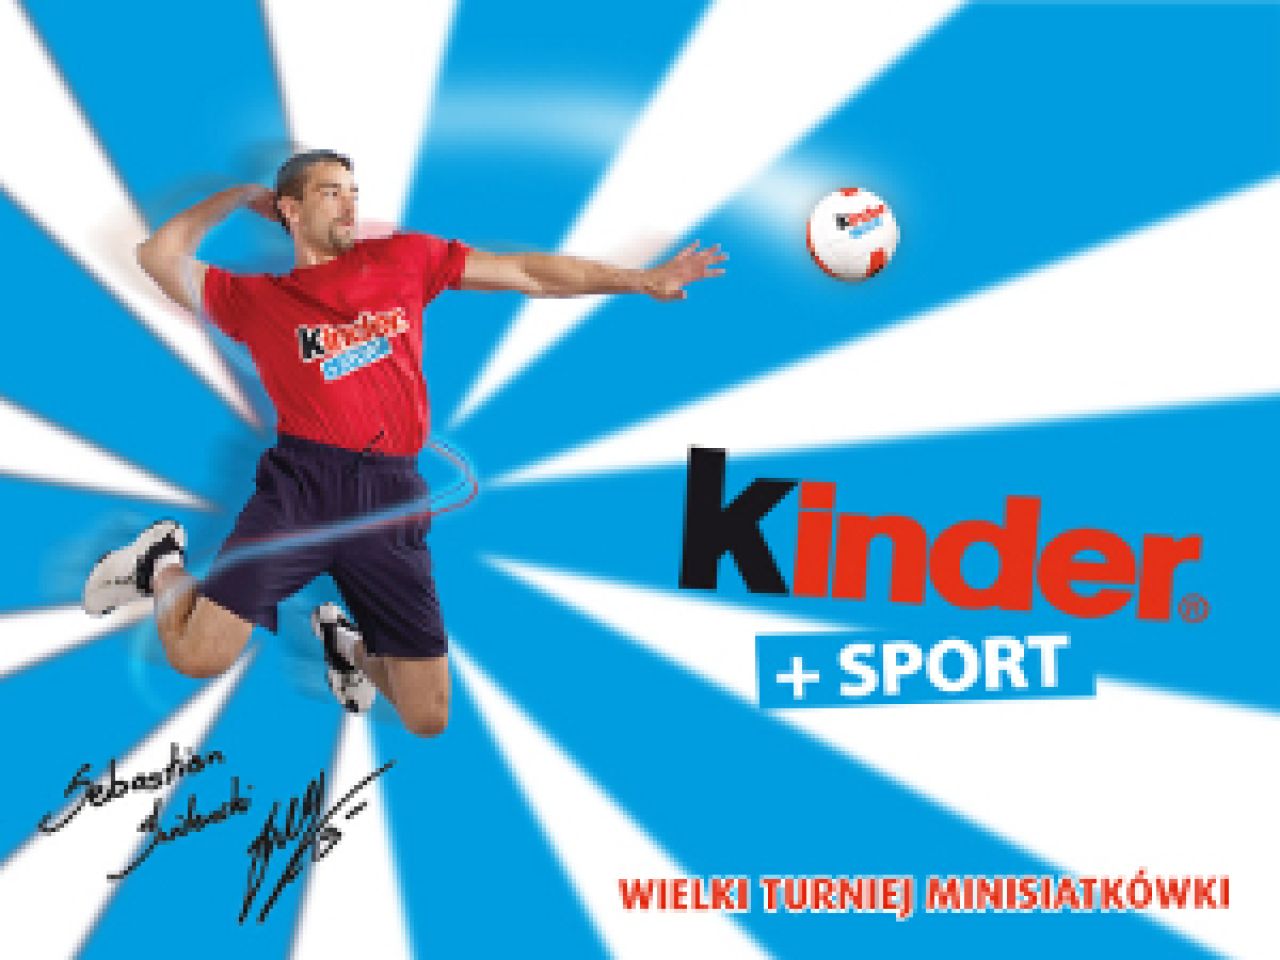 Finał Kinder + Sport 2010